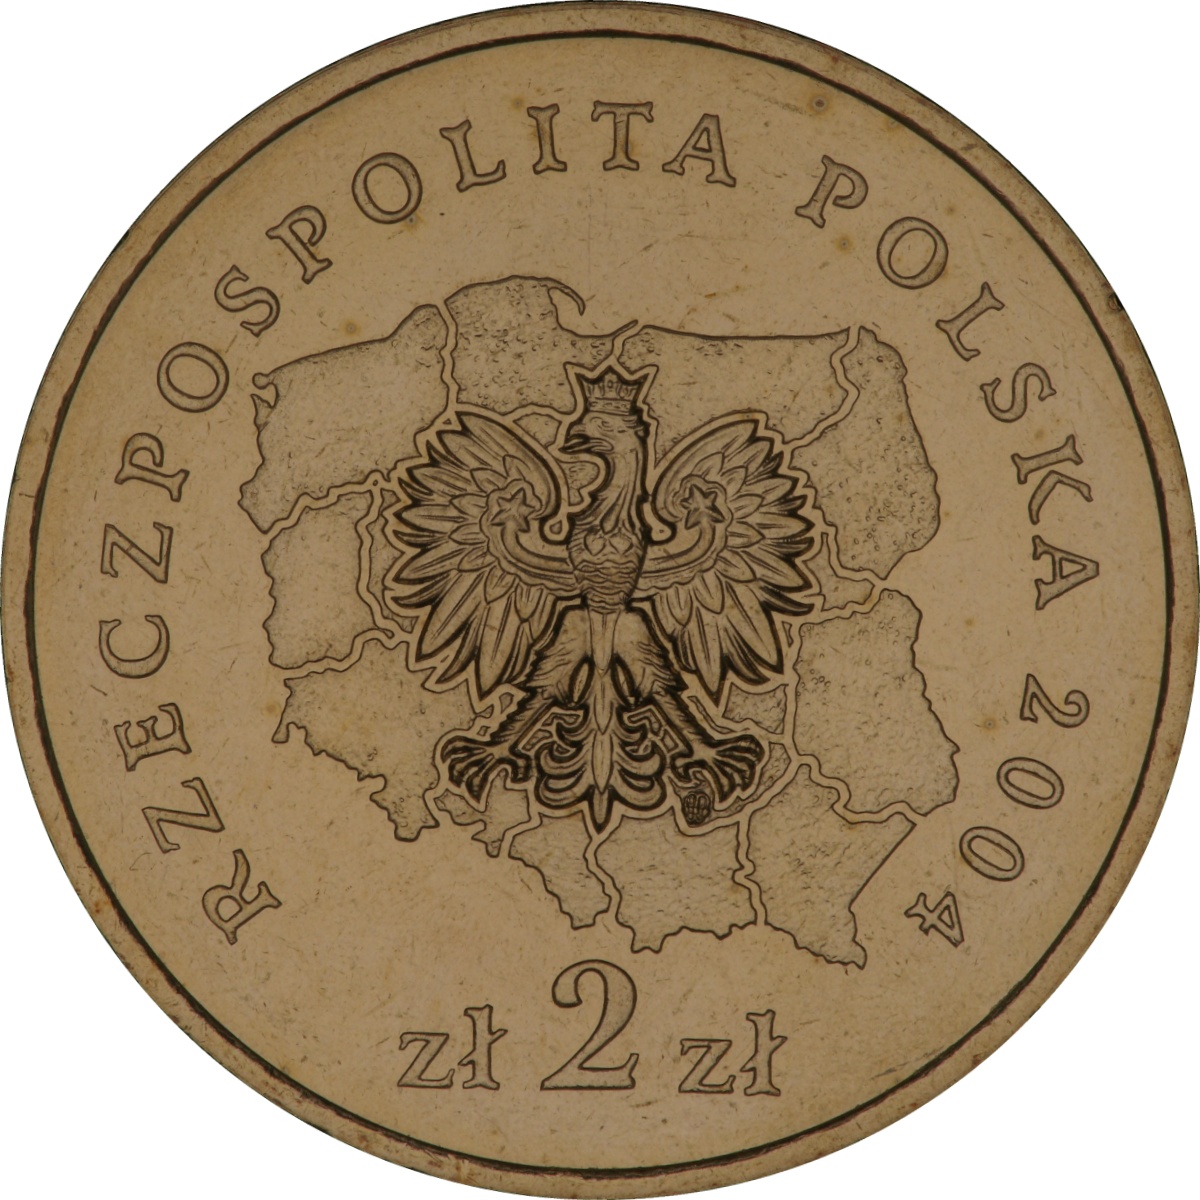 2zl-okolicznosciowe-wojewodztwo-podlaskie-awers-monety